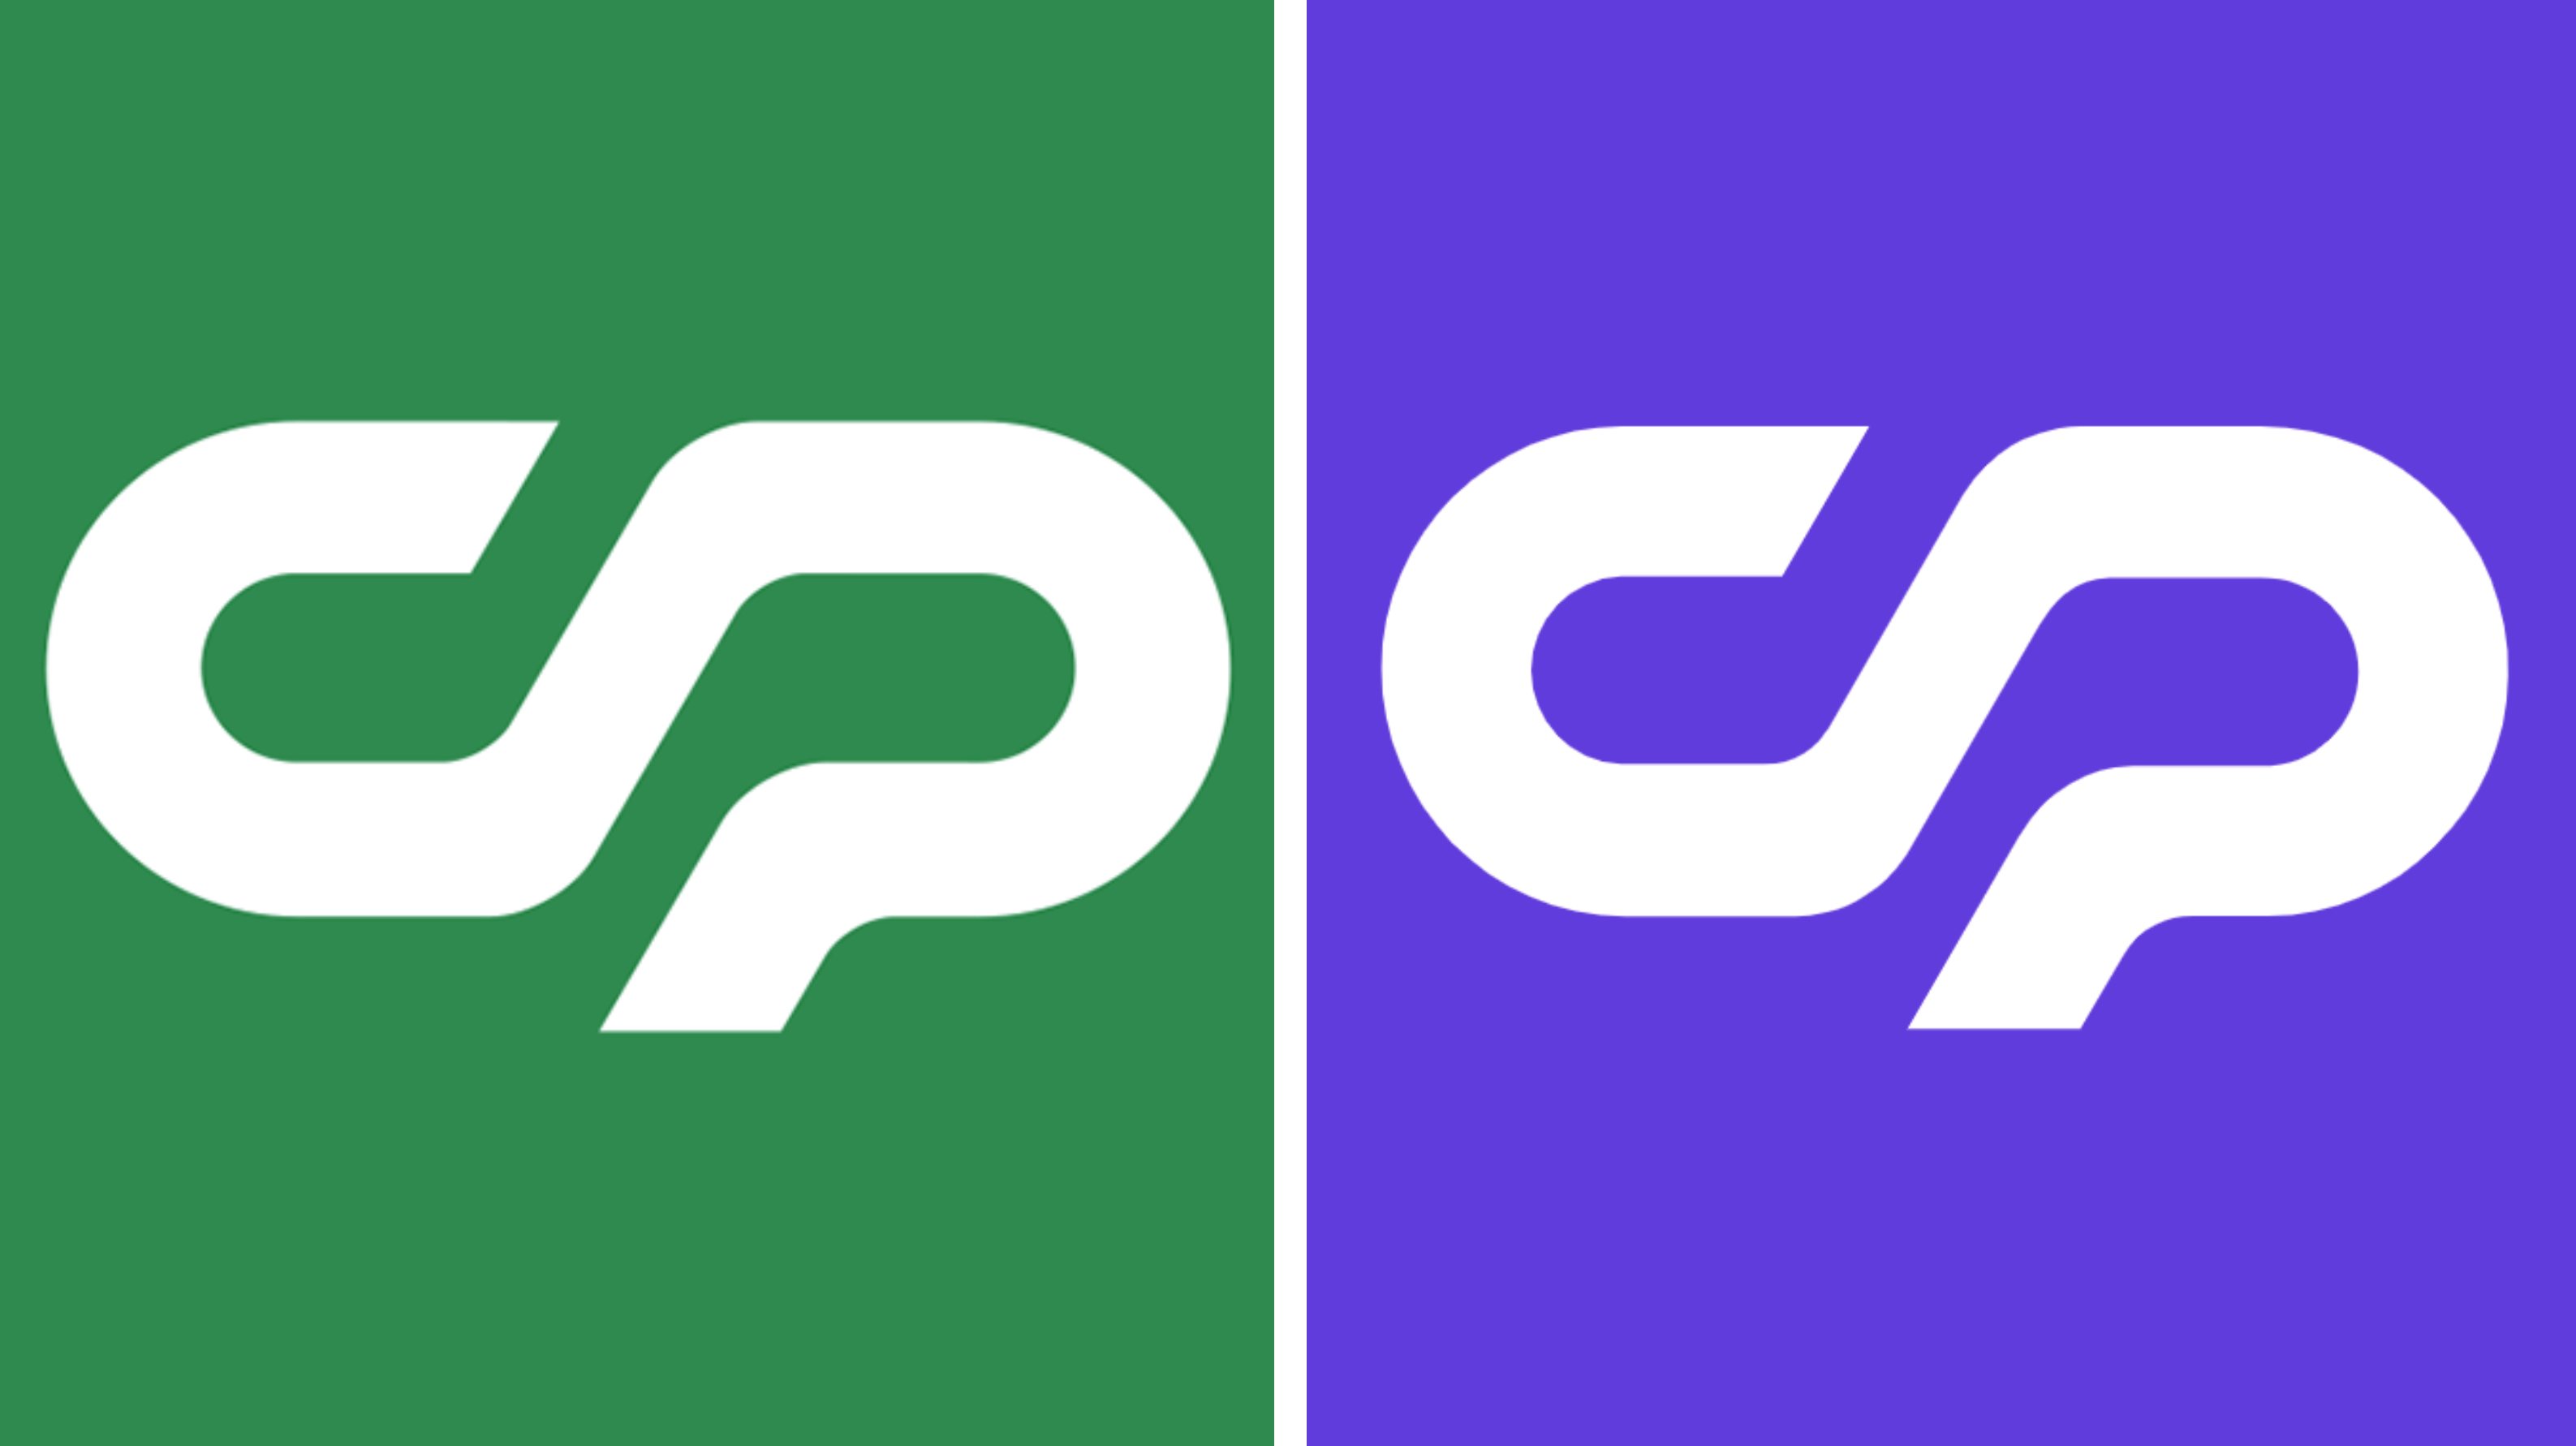 Só a cor mudou de uma marca para a outra: enquanto a CP utiliza o verde, a recém-formada Crypster utiliza um logótipo exatamente igual, mas roxo